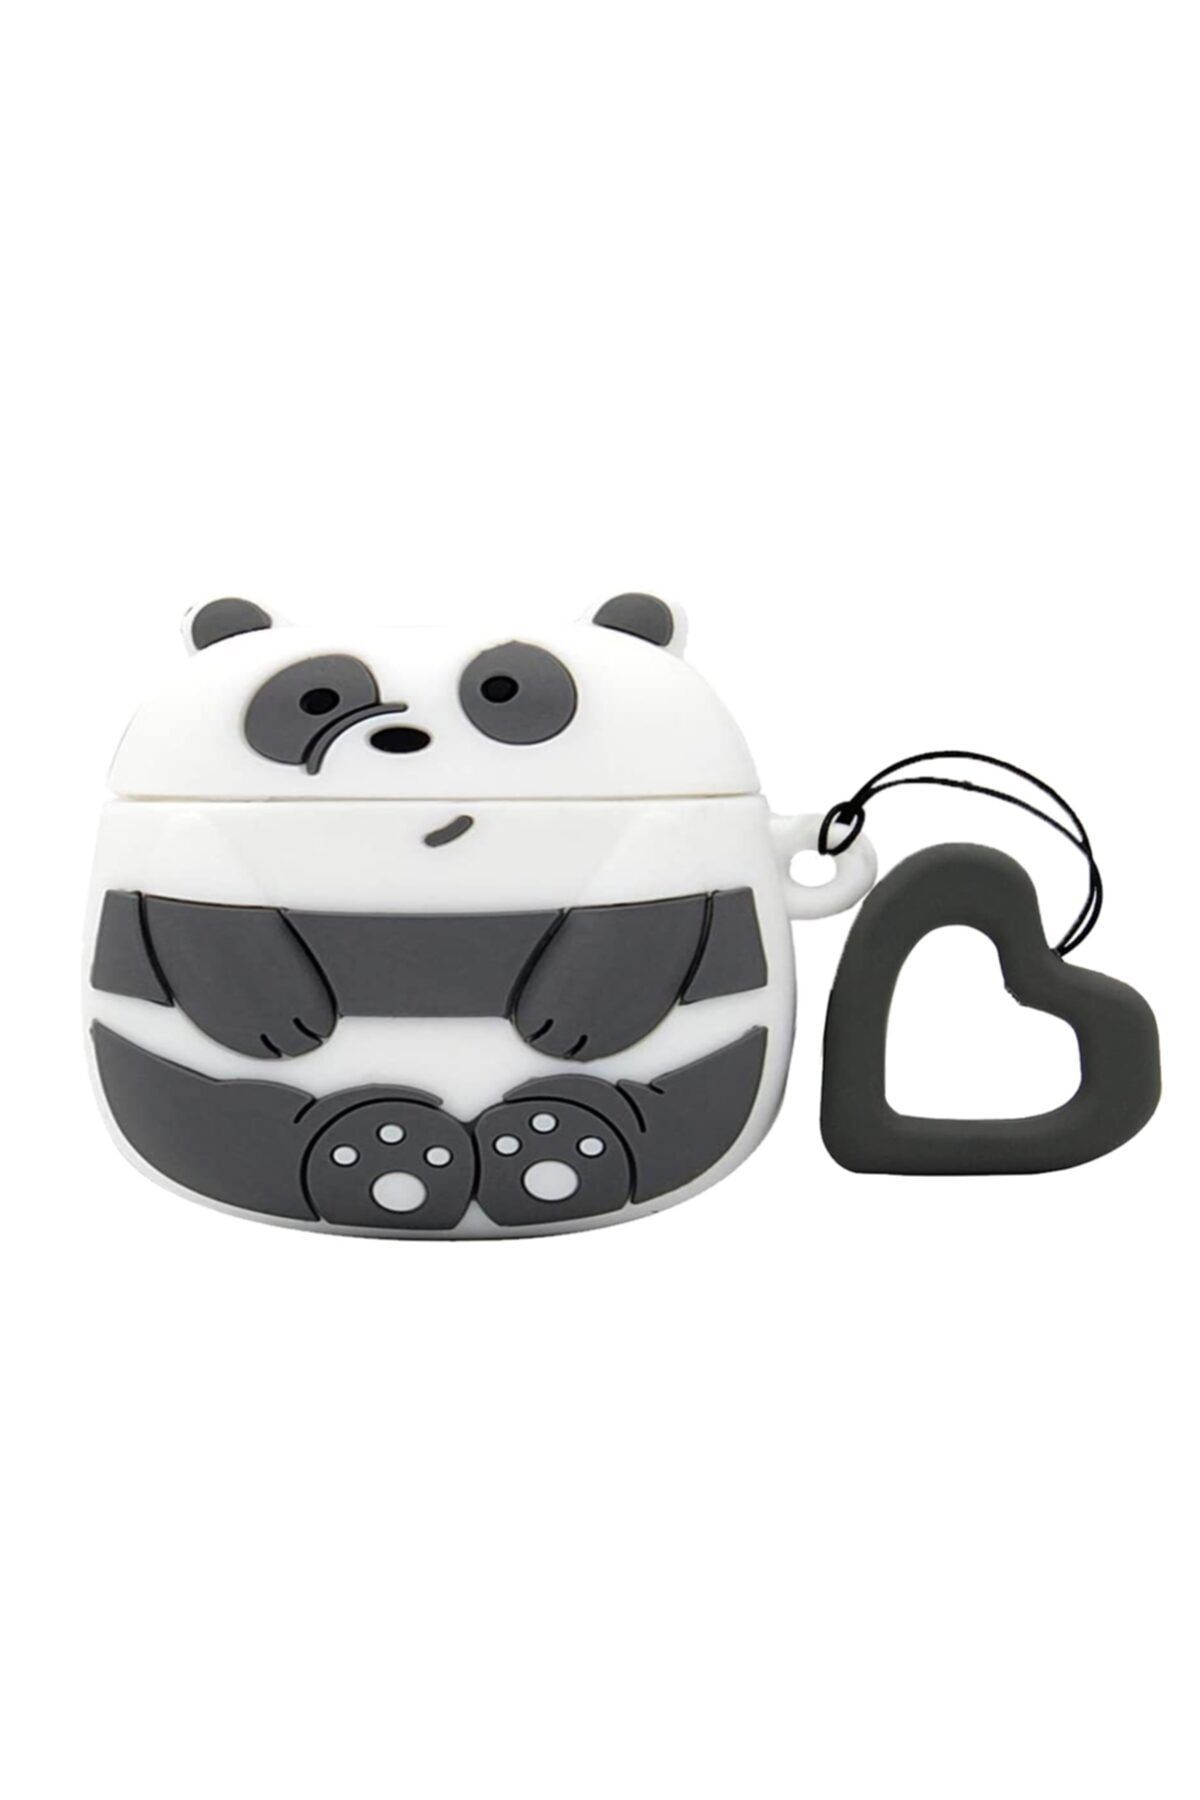 Galata Airpods Pro Uyumlu Panda Silikon Kılıf - Gri